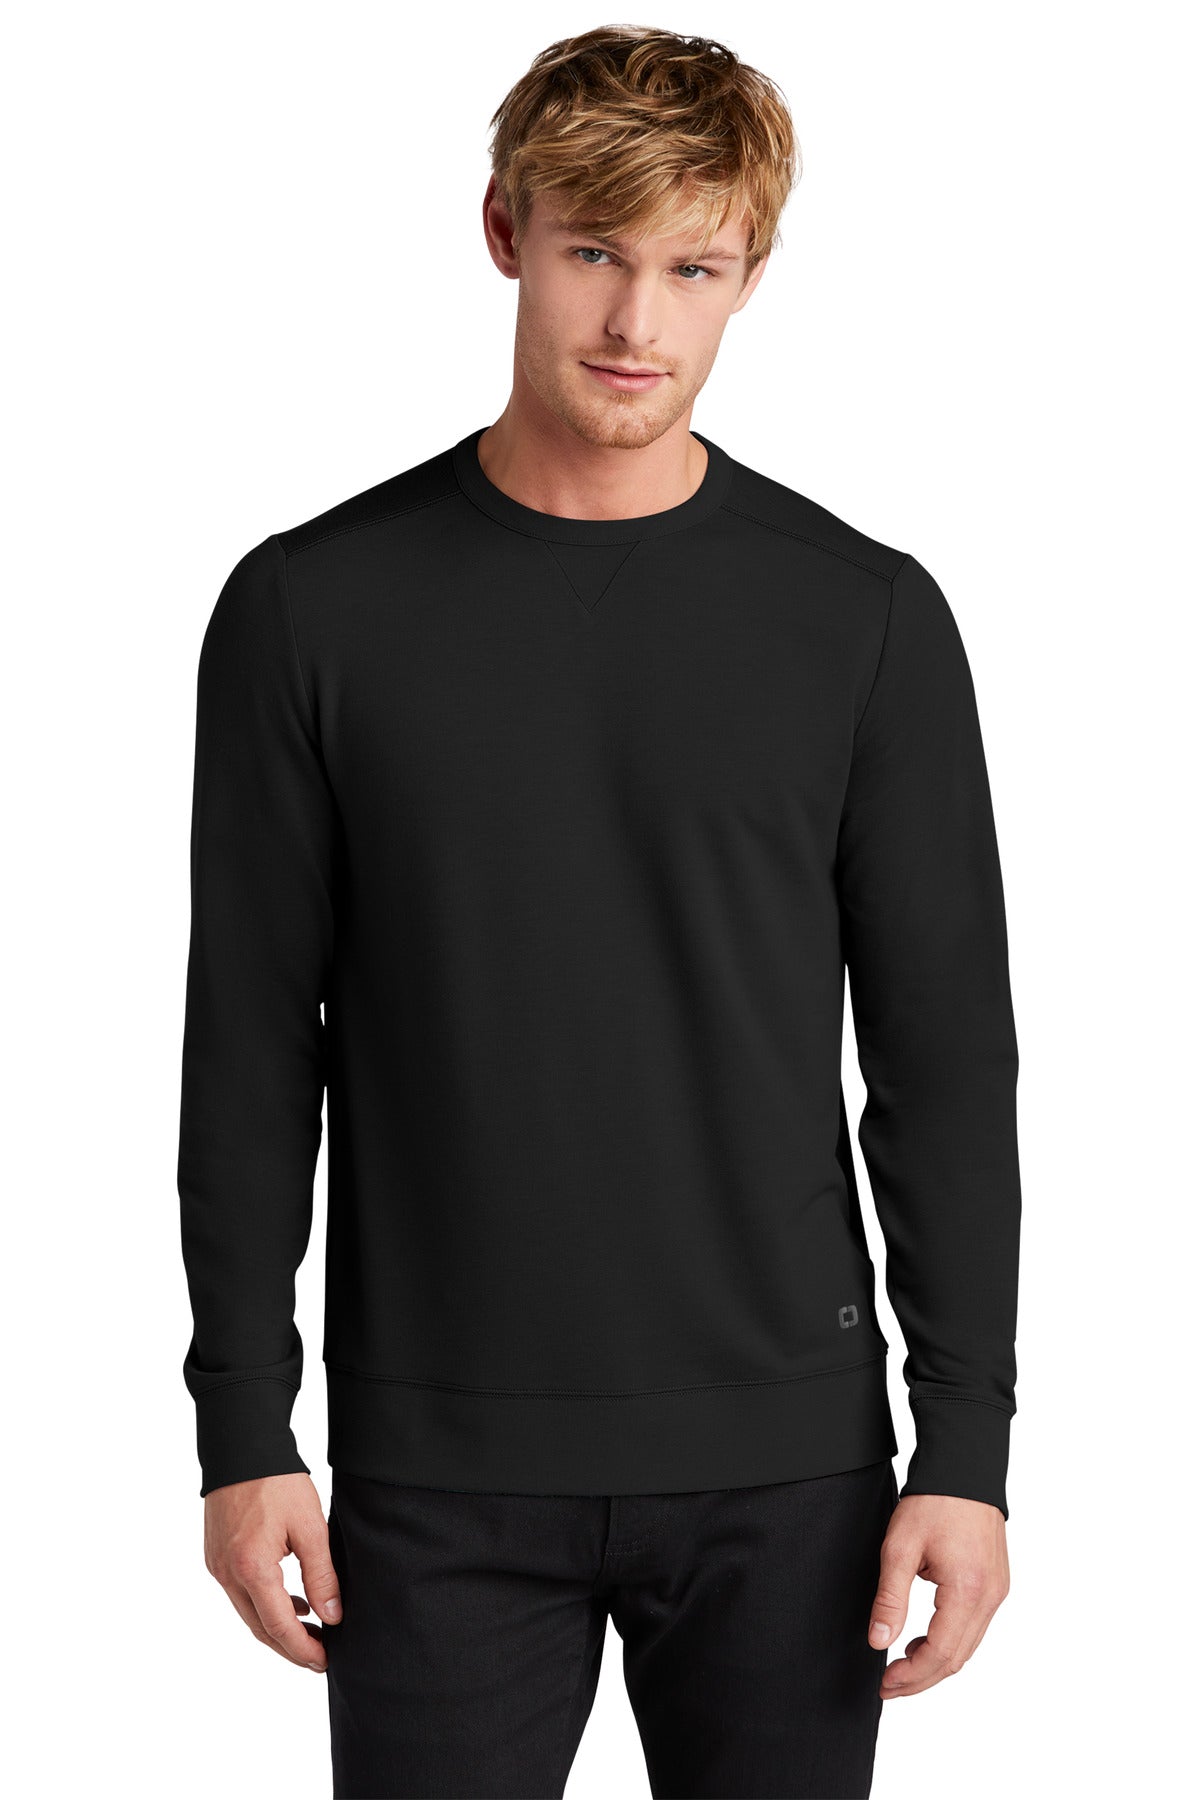 Sweatshirts/Fleece Blacktop OGIO